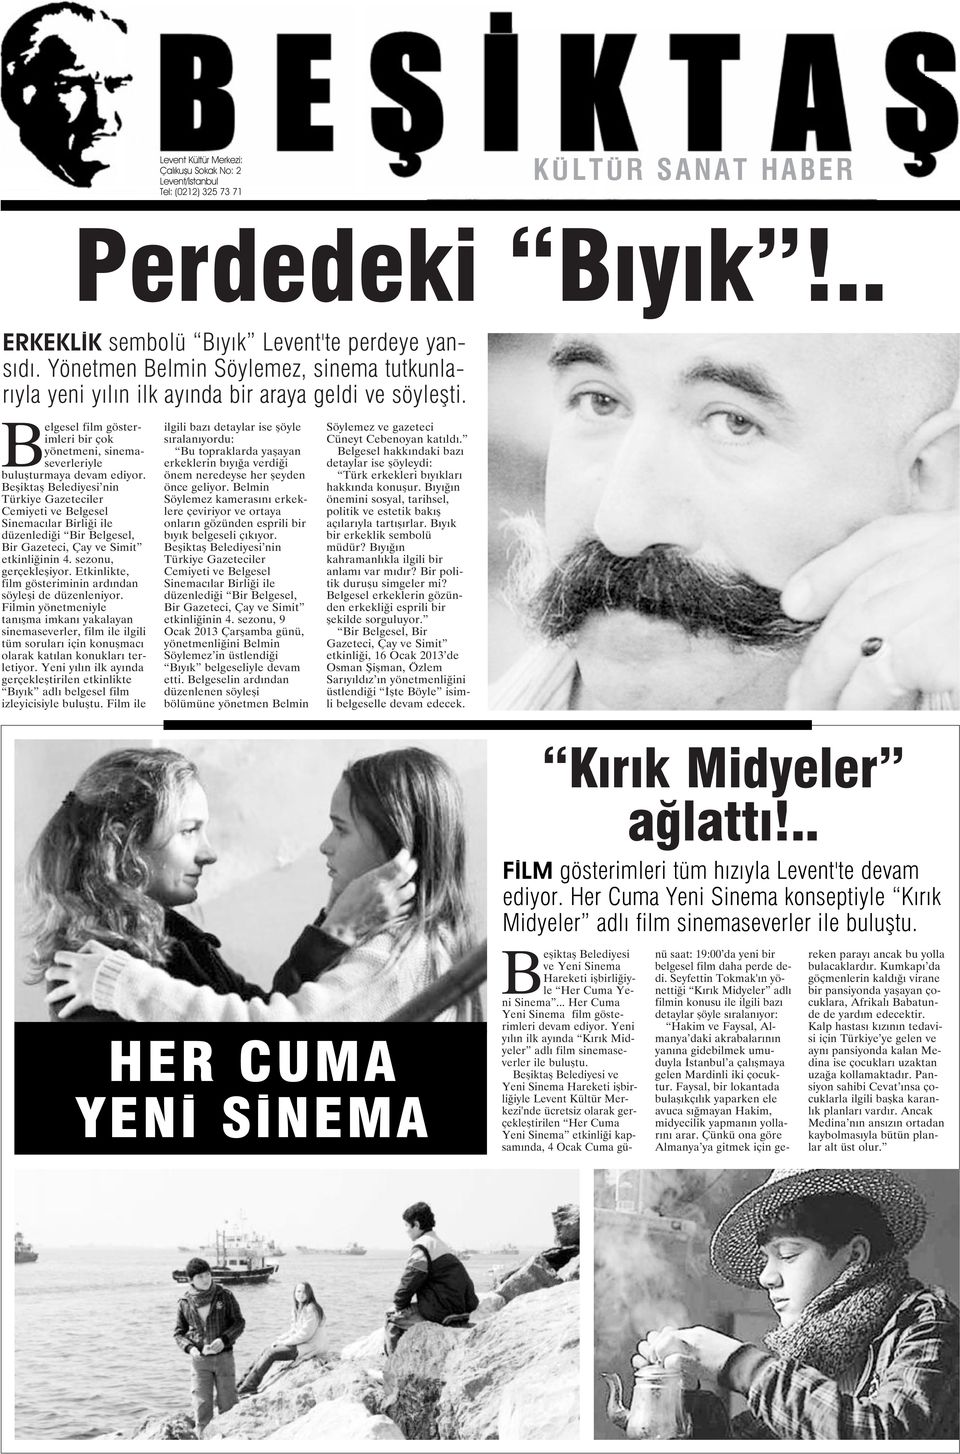 Beşiktaş Belediyesi nin Türkiye Gazeteciler Cemiyeti ve Belgesel Sinemacılar Birliği ile düzenlediği Bir Belgesel, Bir Gazeteci, Çay ve Simit etkinliğinin 4. sezonu, gerçekleşiyor.